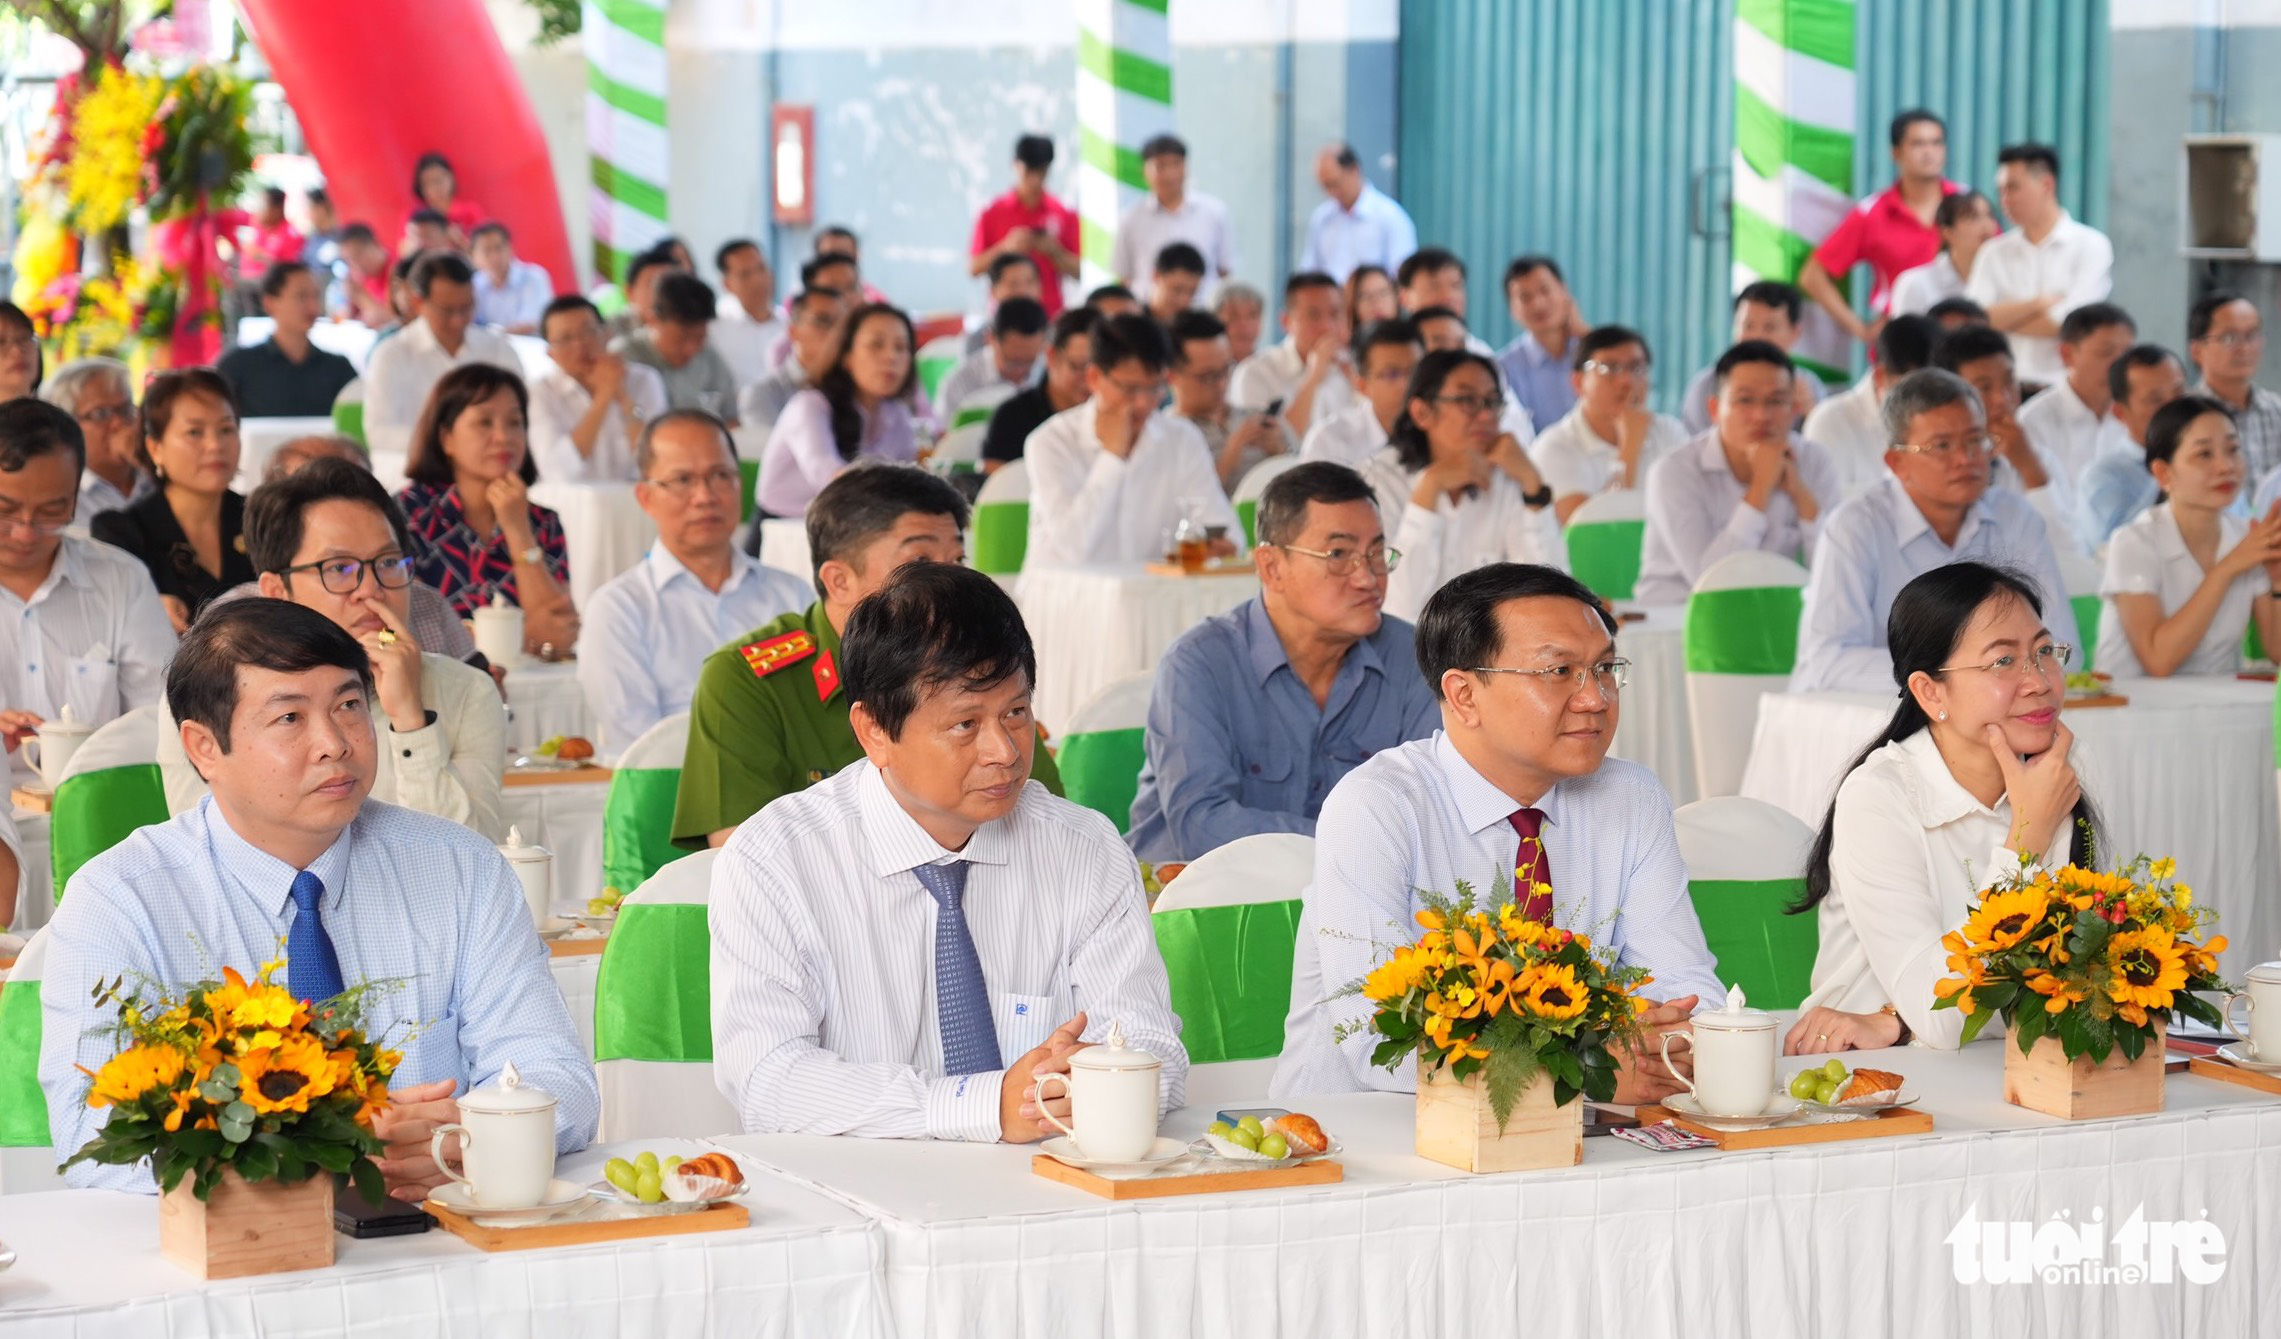 Delegates attend the groundbreaking of the Tuoi Tre Complex in Go Vap District, Ho Chi Minh City, August 30, 2022. Photo: Huu Hanh / Tuoi Tre